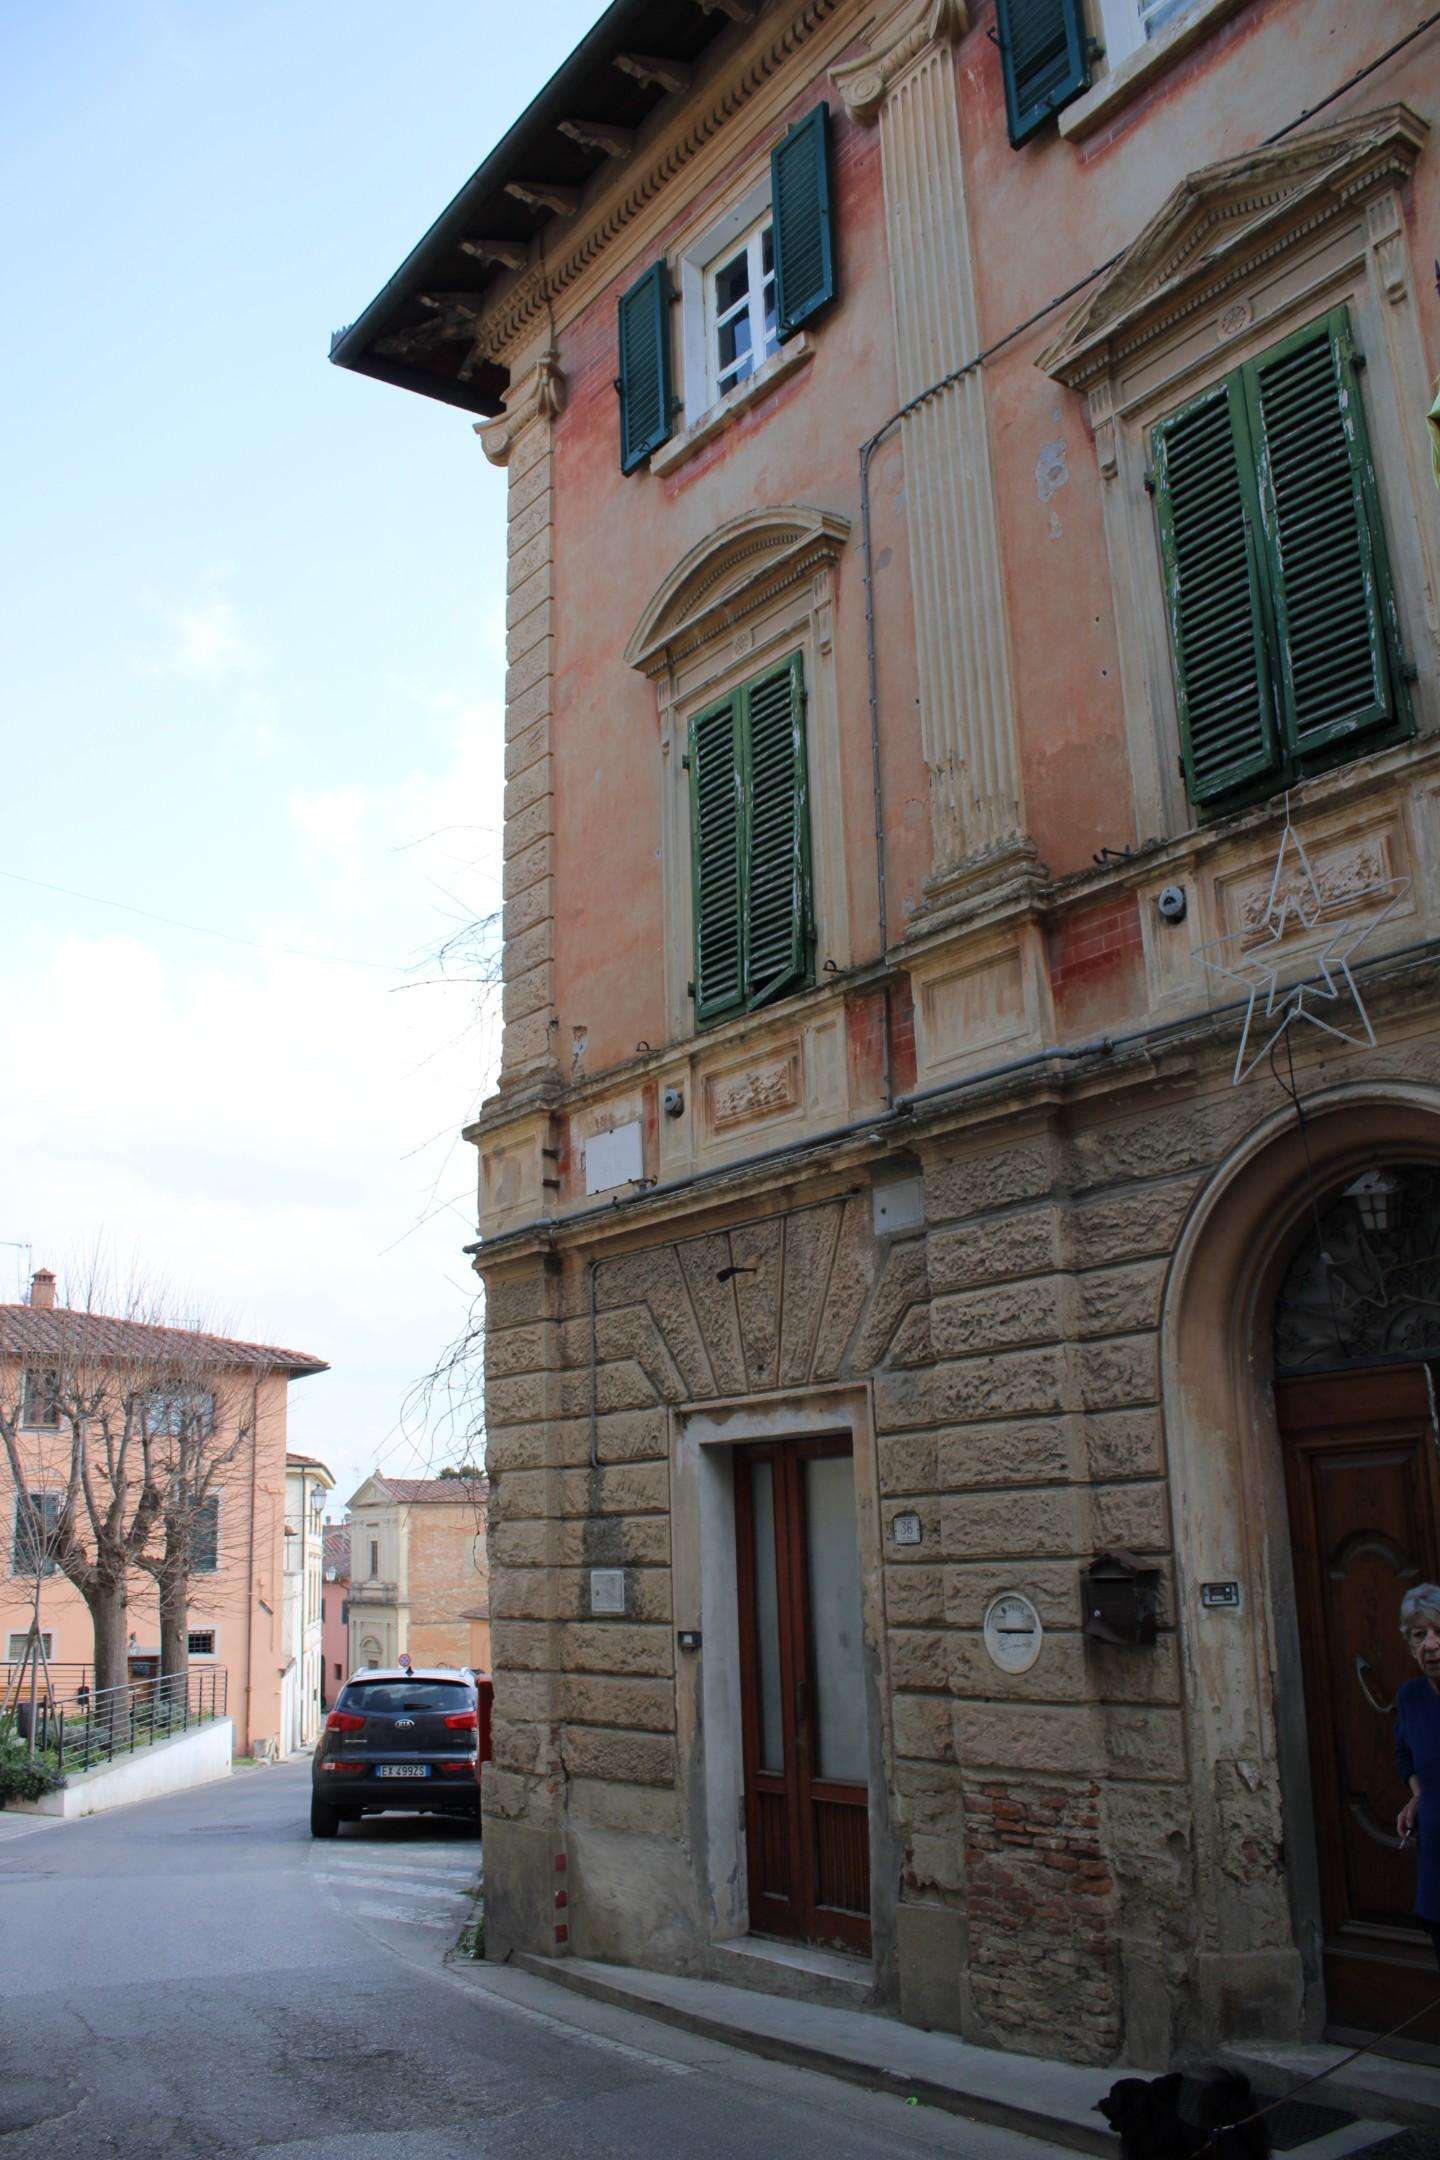 Palazzo - Stabile in Vendita a Casciana Terme Lari Cevoli PI,